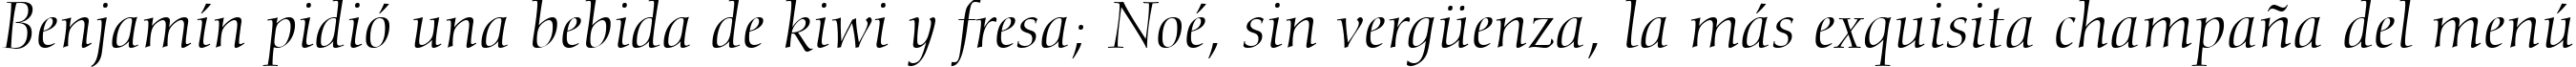 Пример написания шрифтом Calligraphic 810 Italic BT текста на испанском